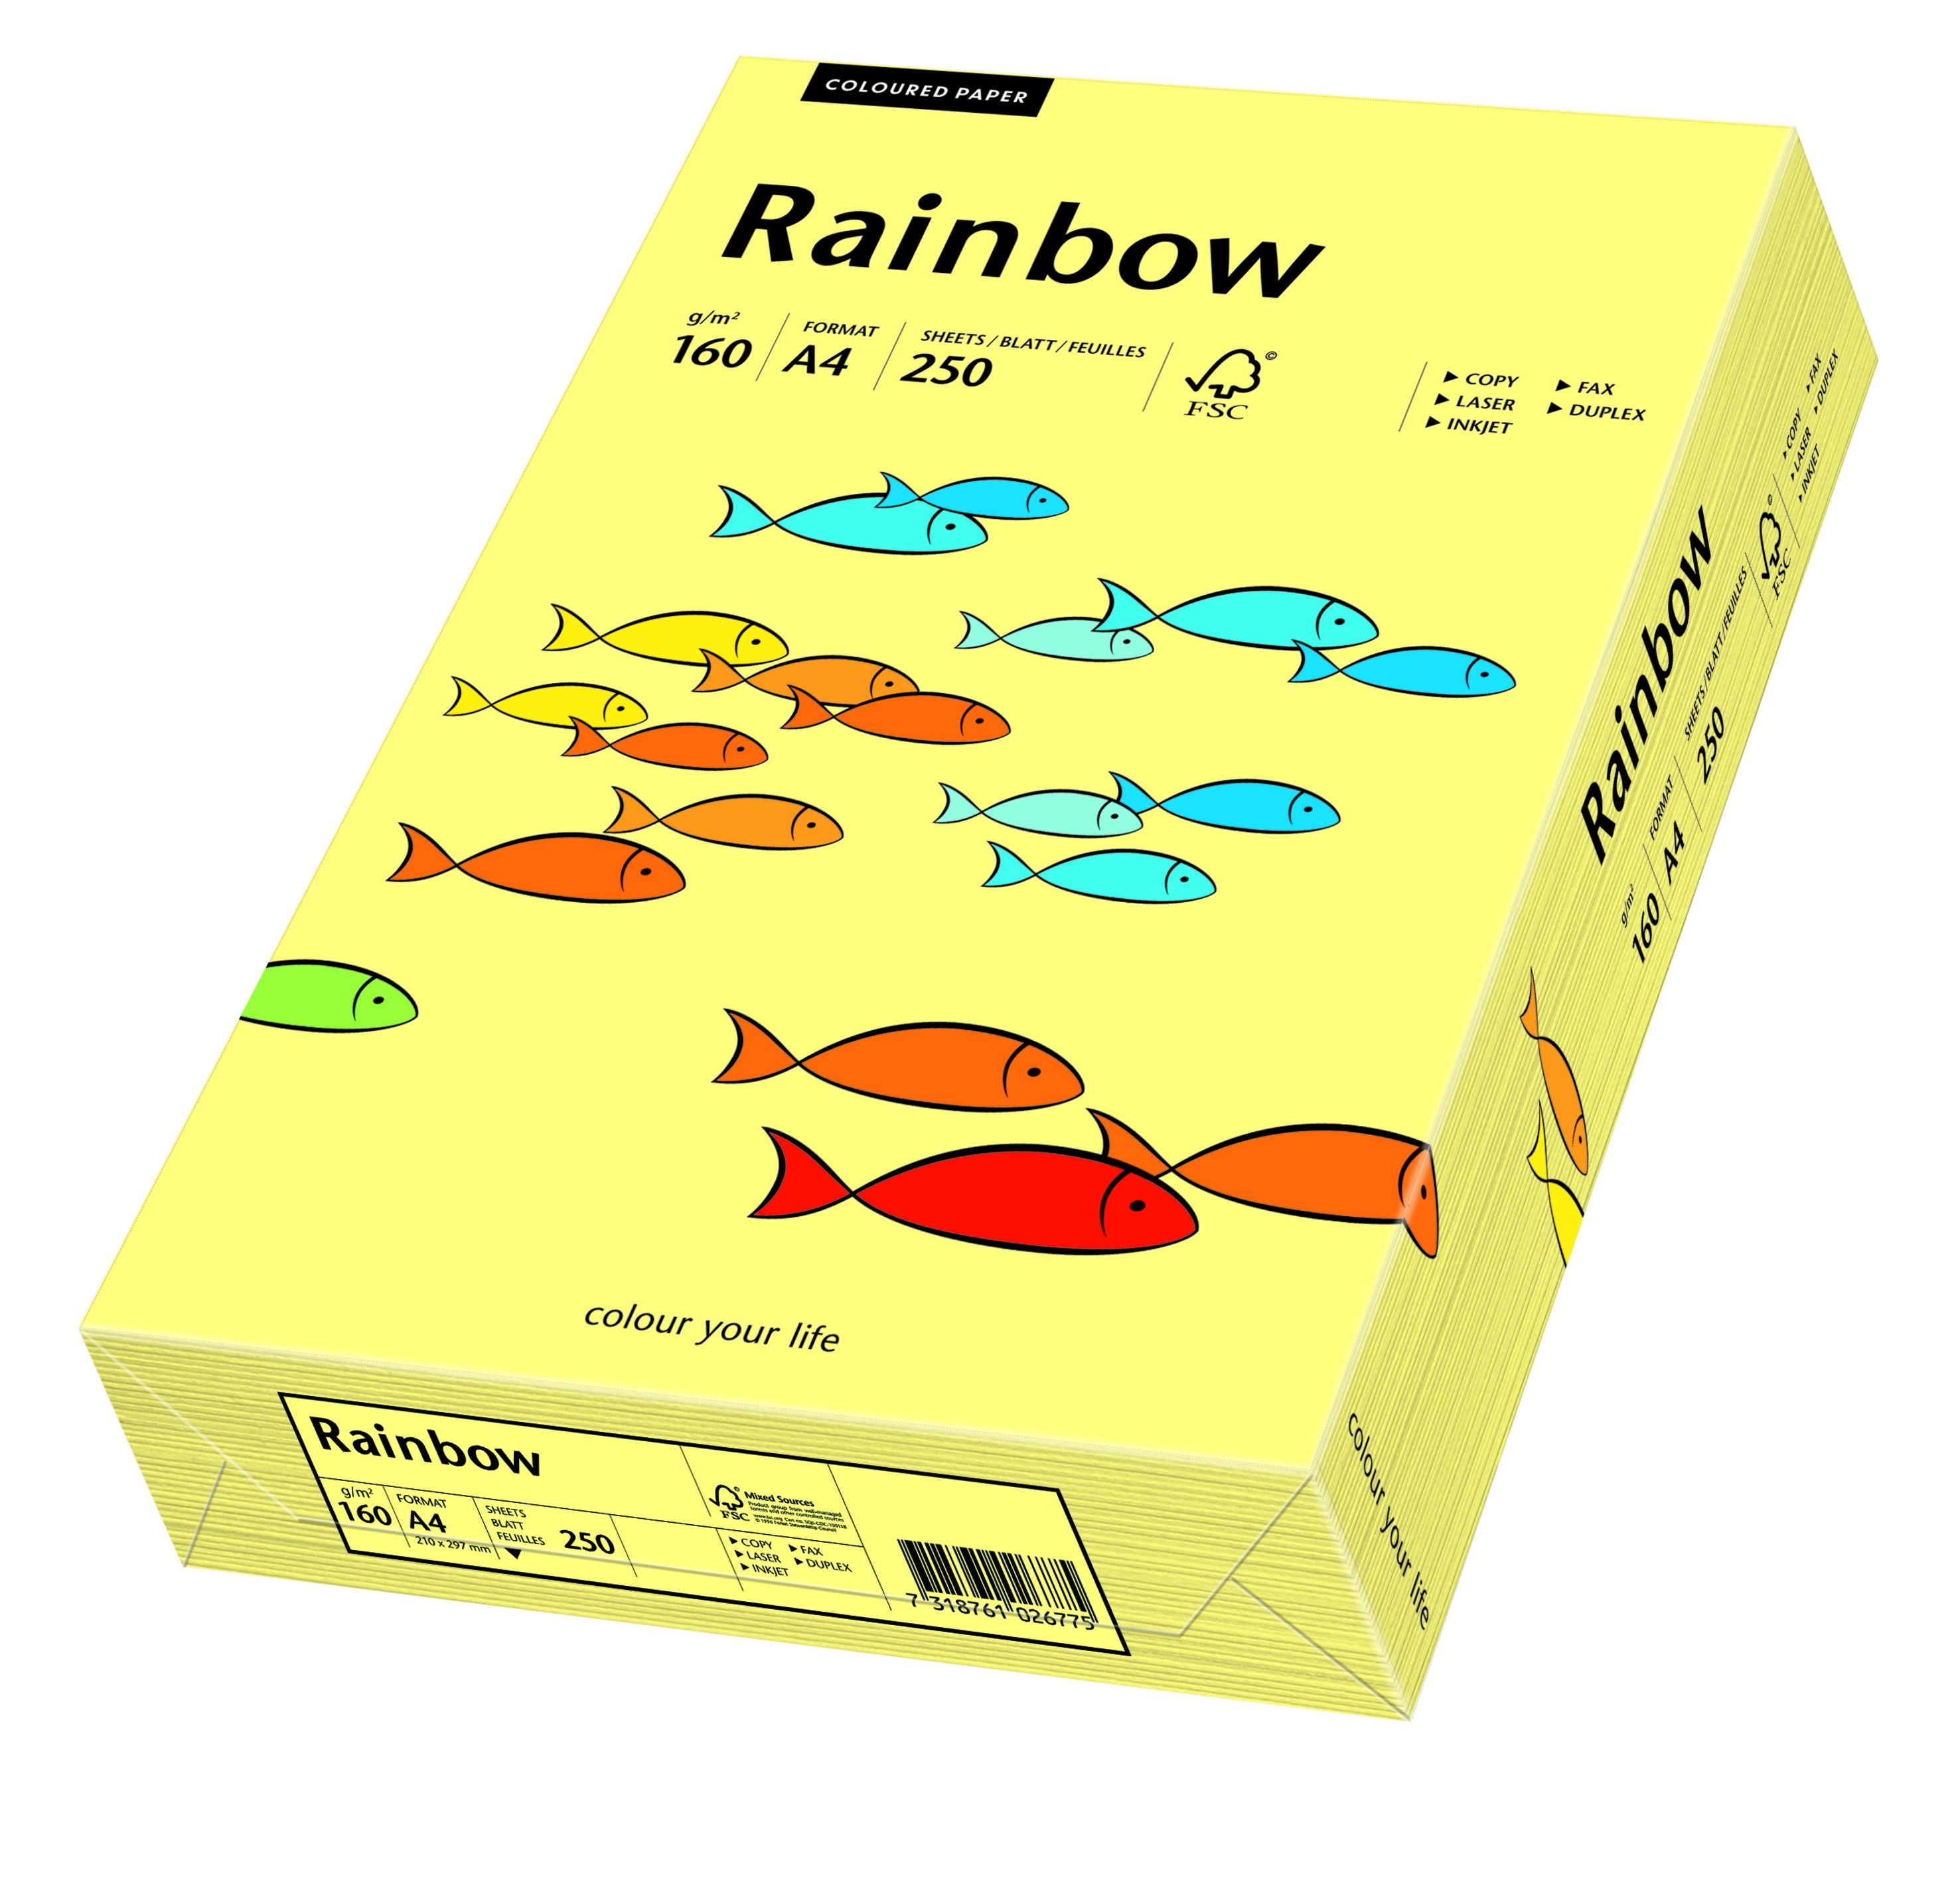 Zdjęcia - Papier Schneider Papyrus  kolorowy Rainbow A4 160g/250ark., nr 12 - żółty jasny 